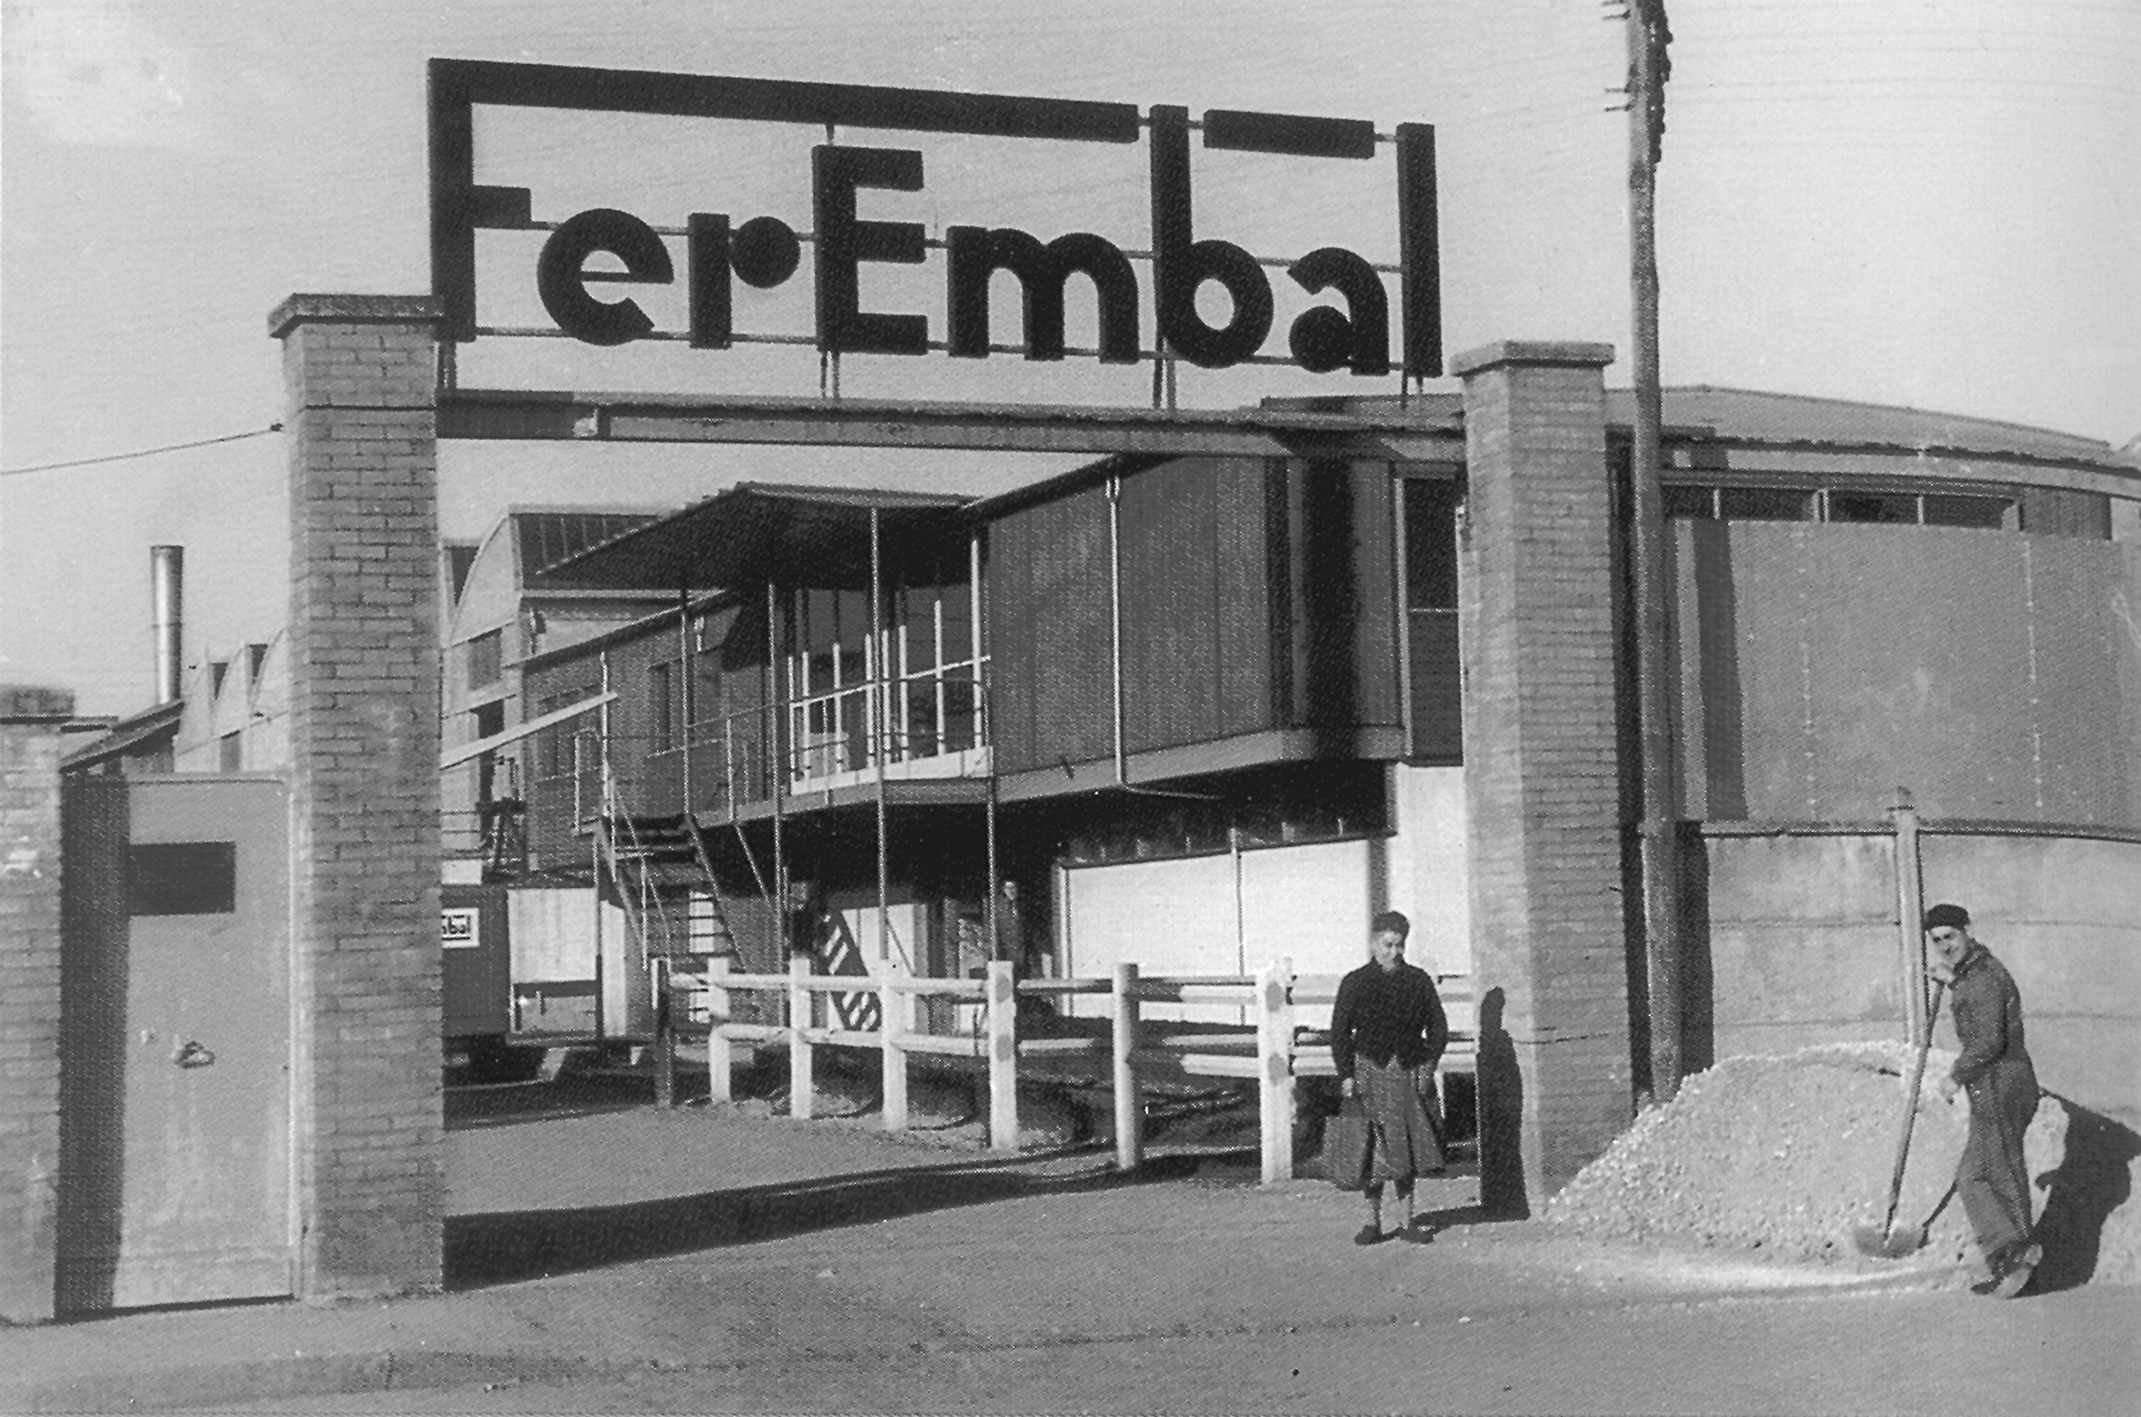 Entrée de l’usine Ferembal, place Provençal, Nancy, c. 1955.